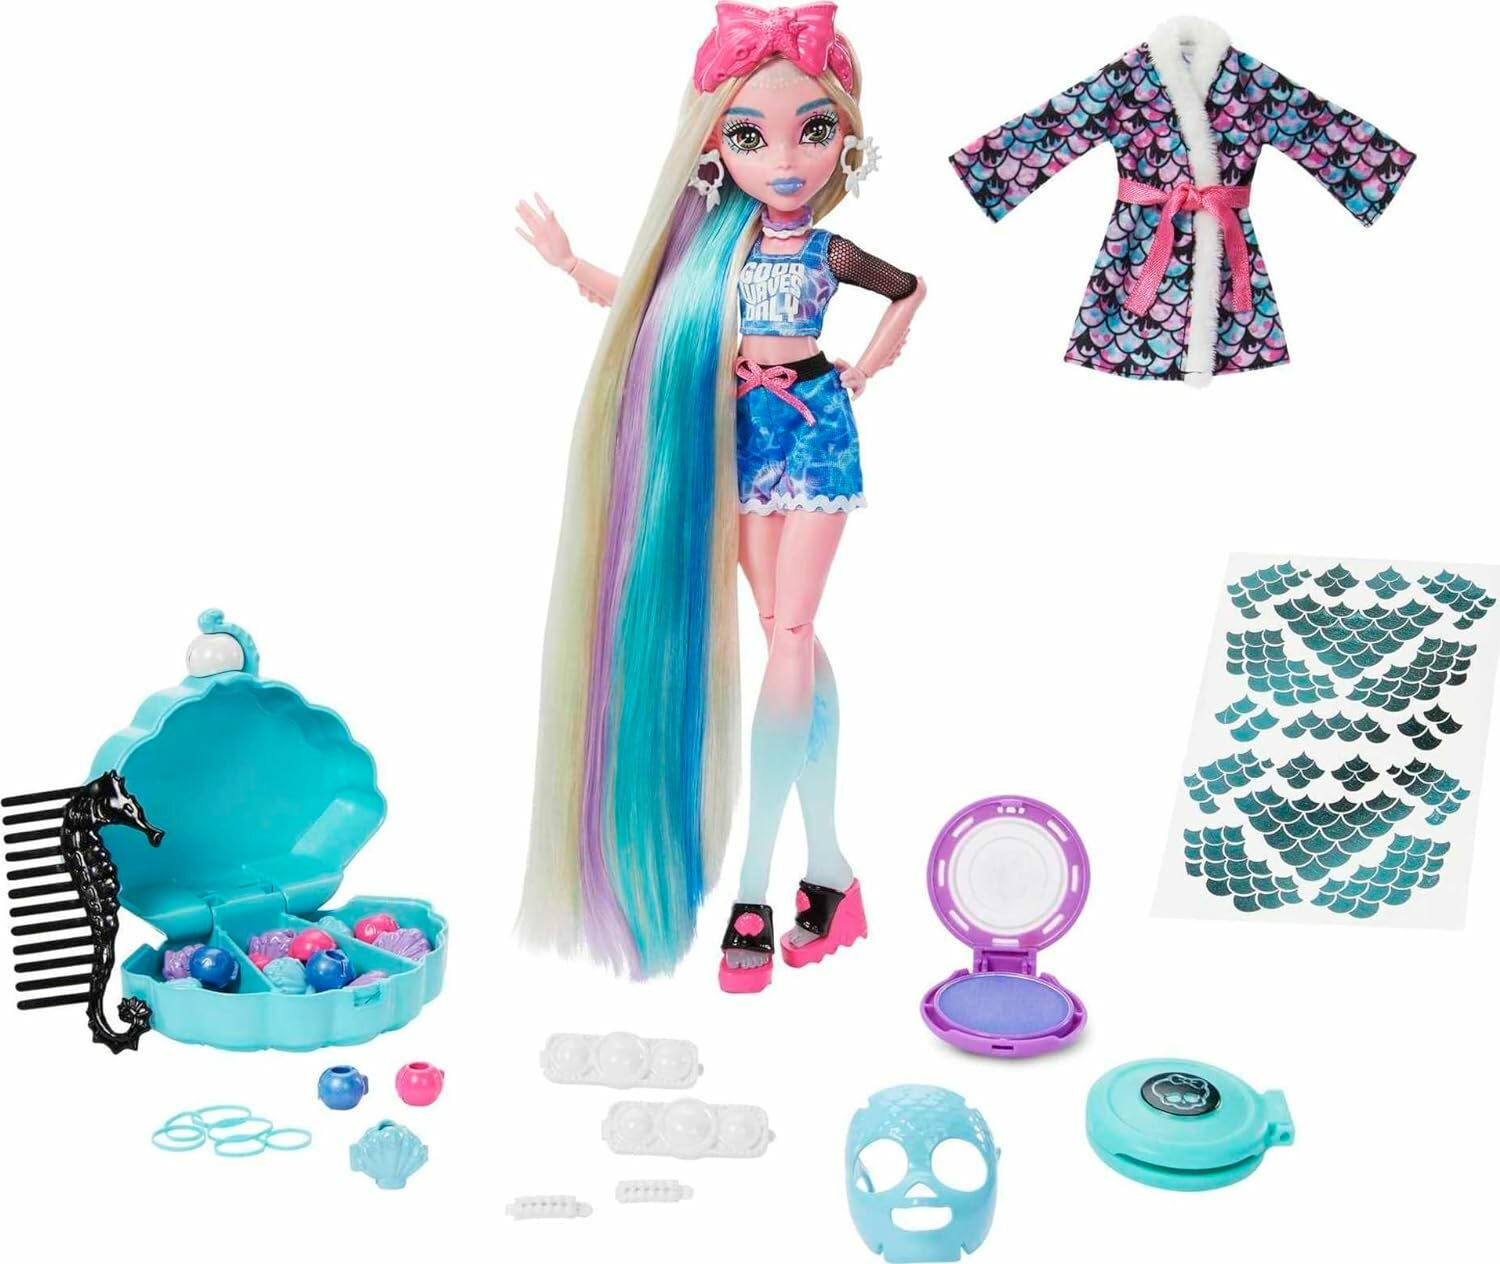 Mattel Panenka Monster High, Lagoona Blue Spa Day Set s příslušenstvím